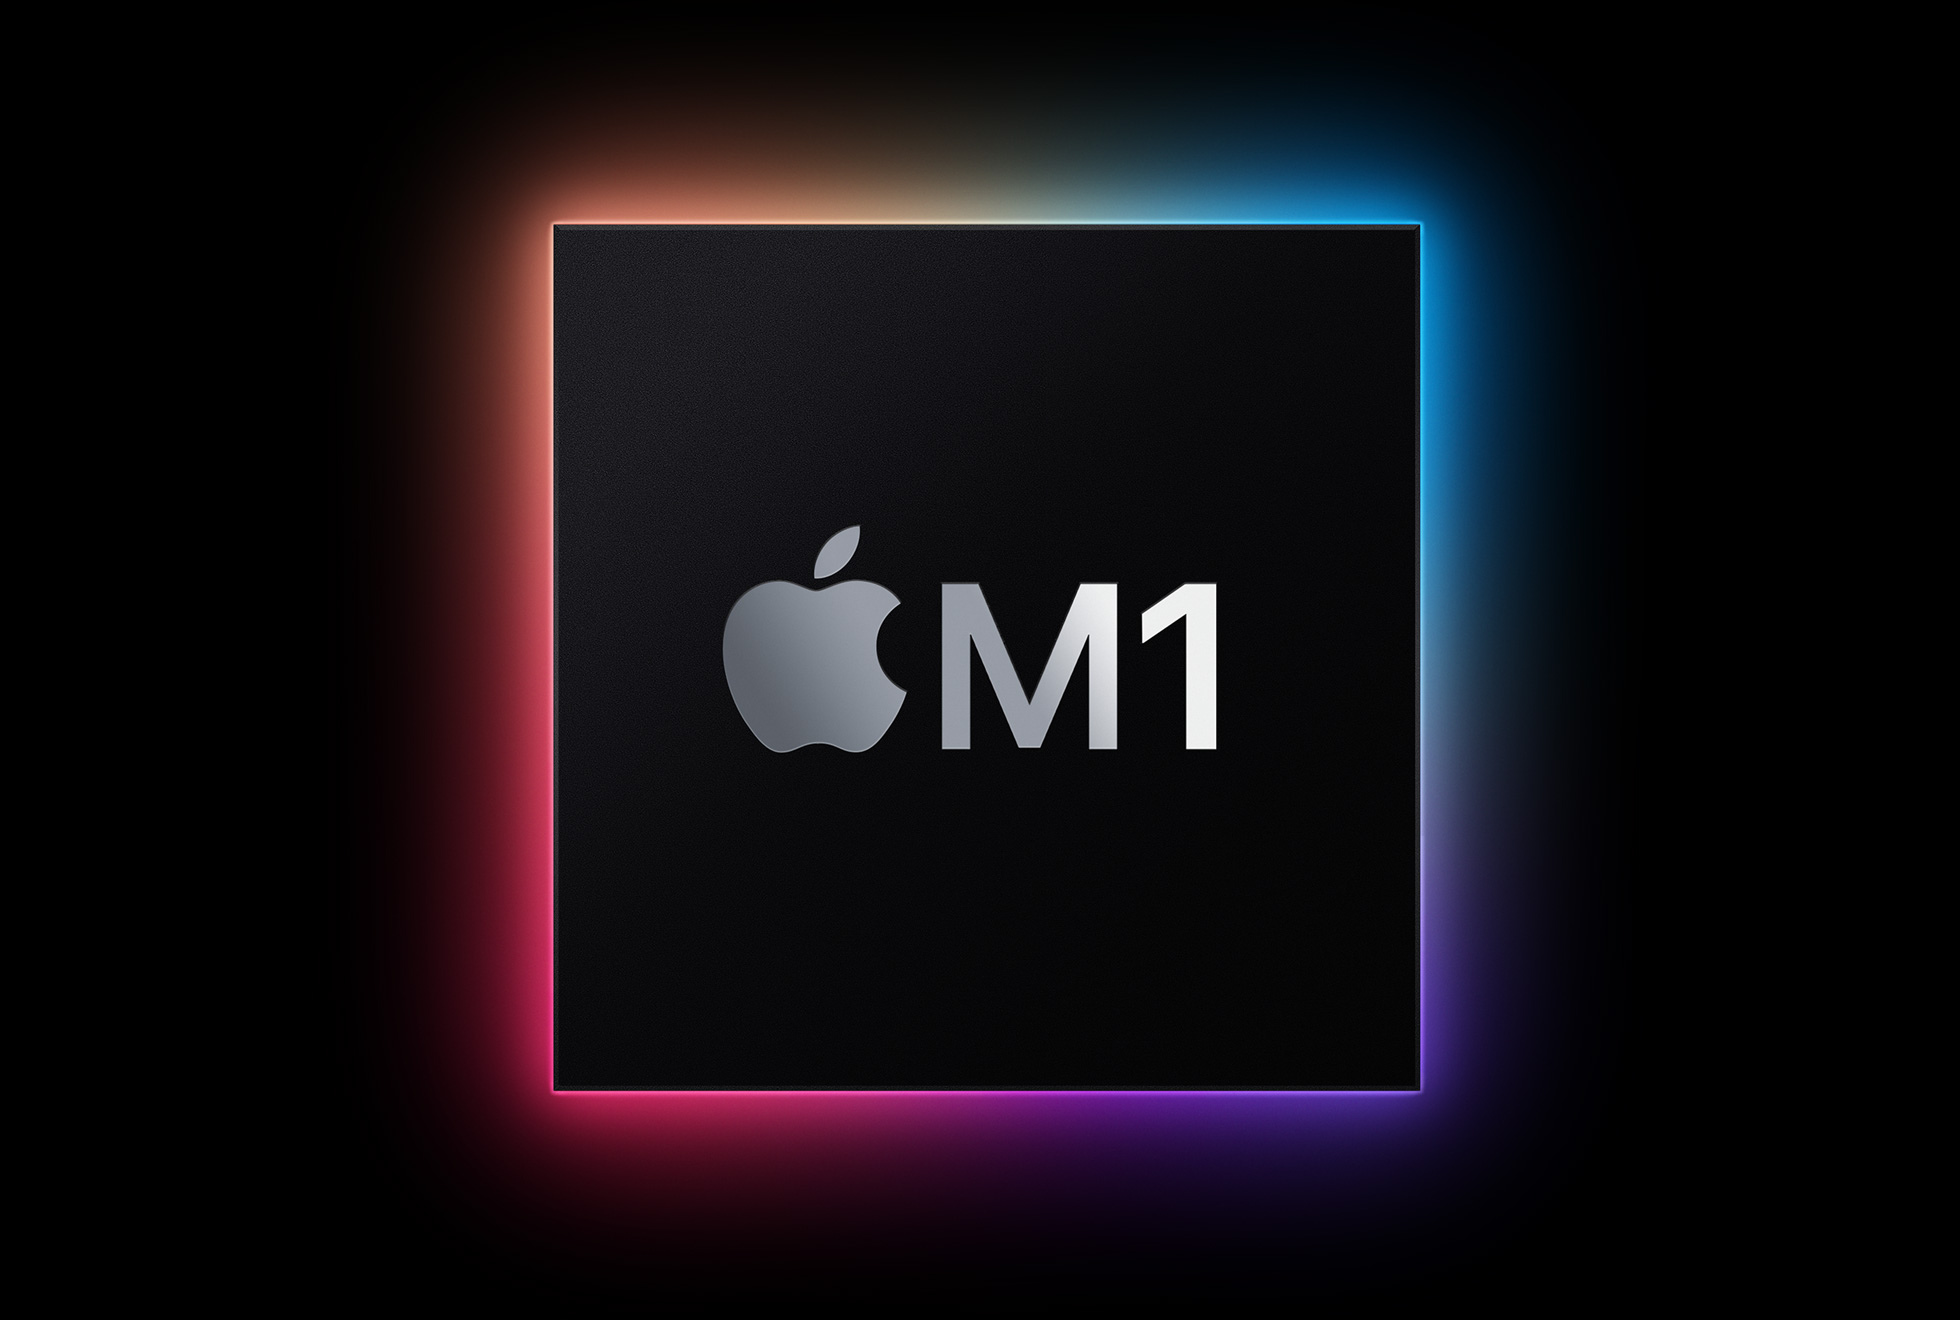 indesign m1 apple